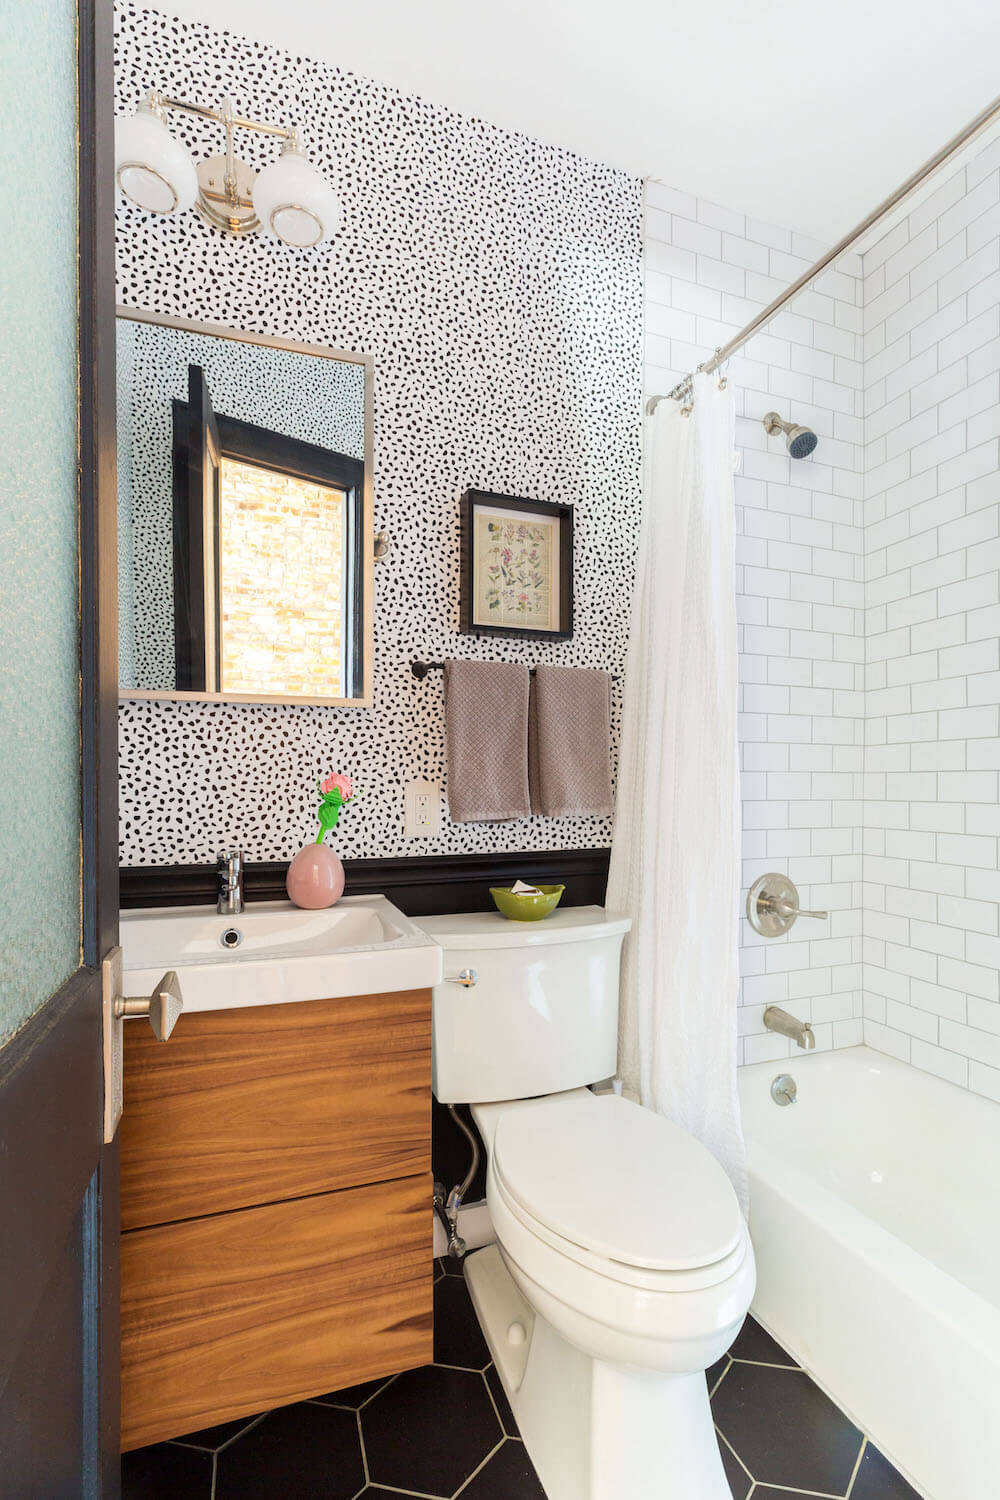 Wallpaper in Bathrooms: 10 Stylish Renovation Ideas | Sweeten